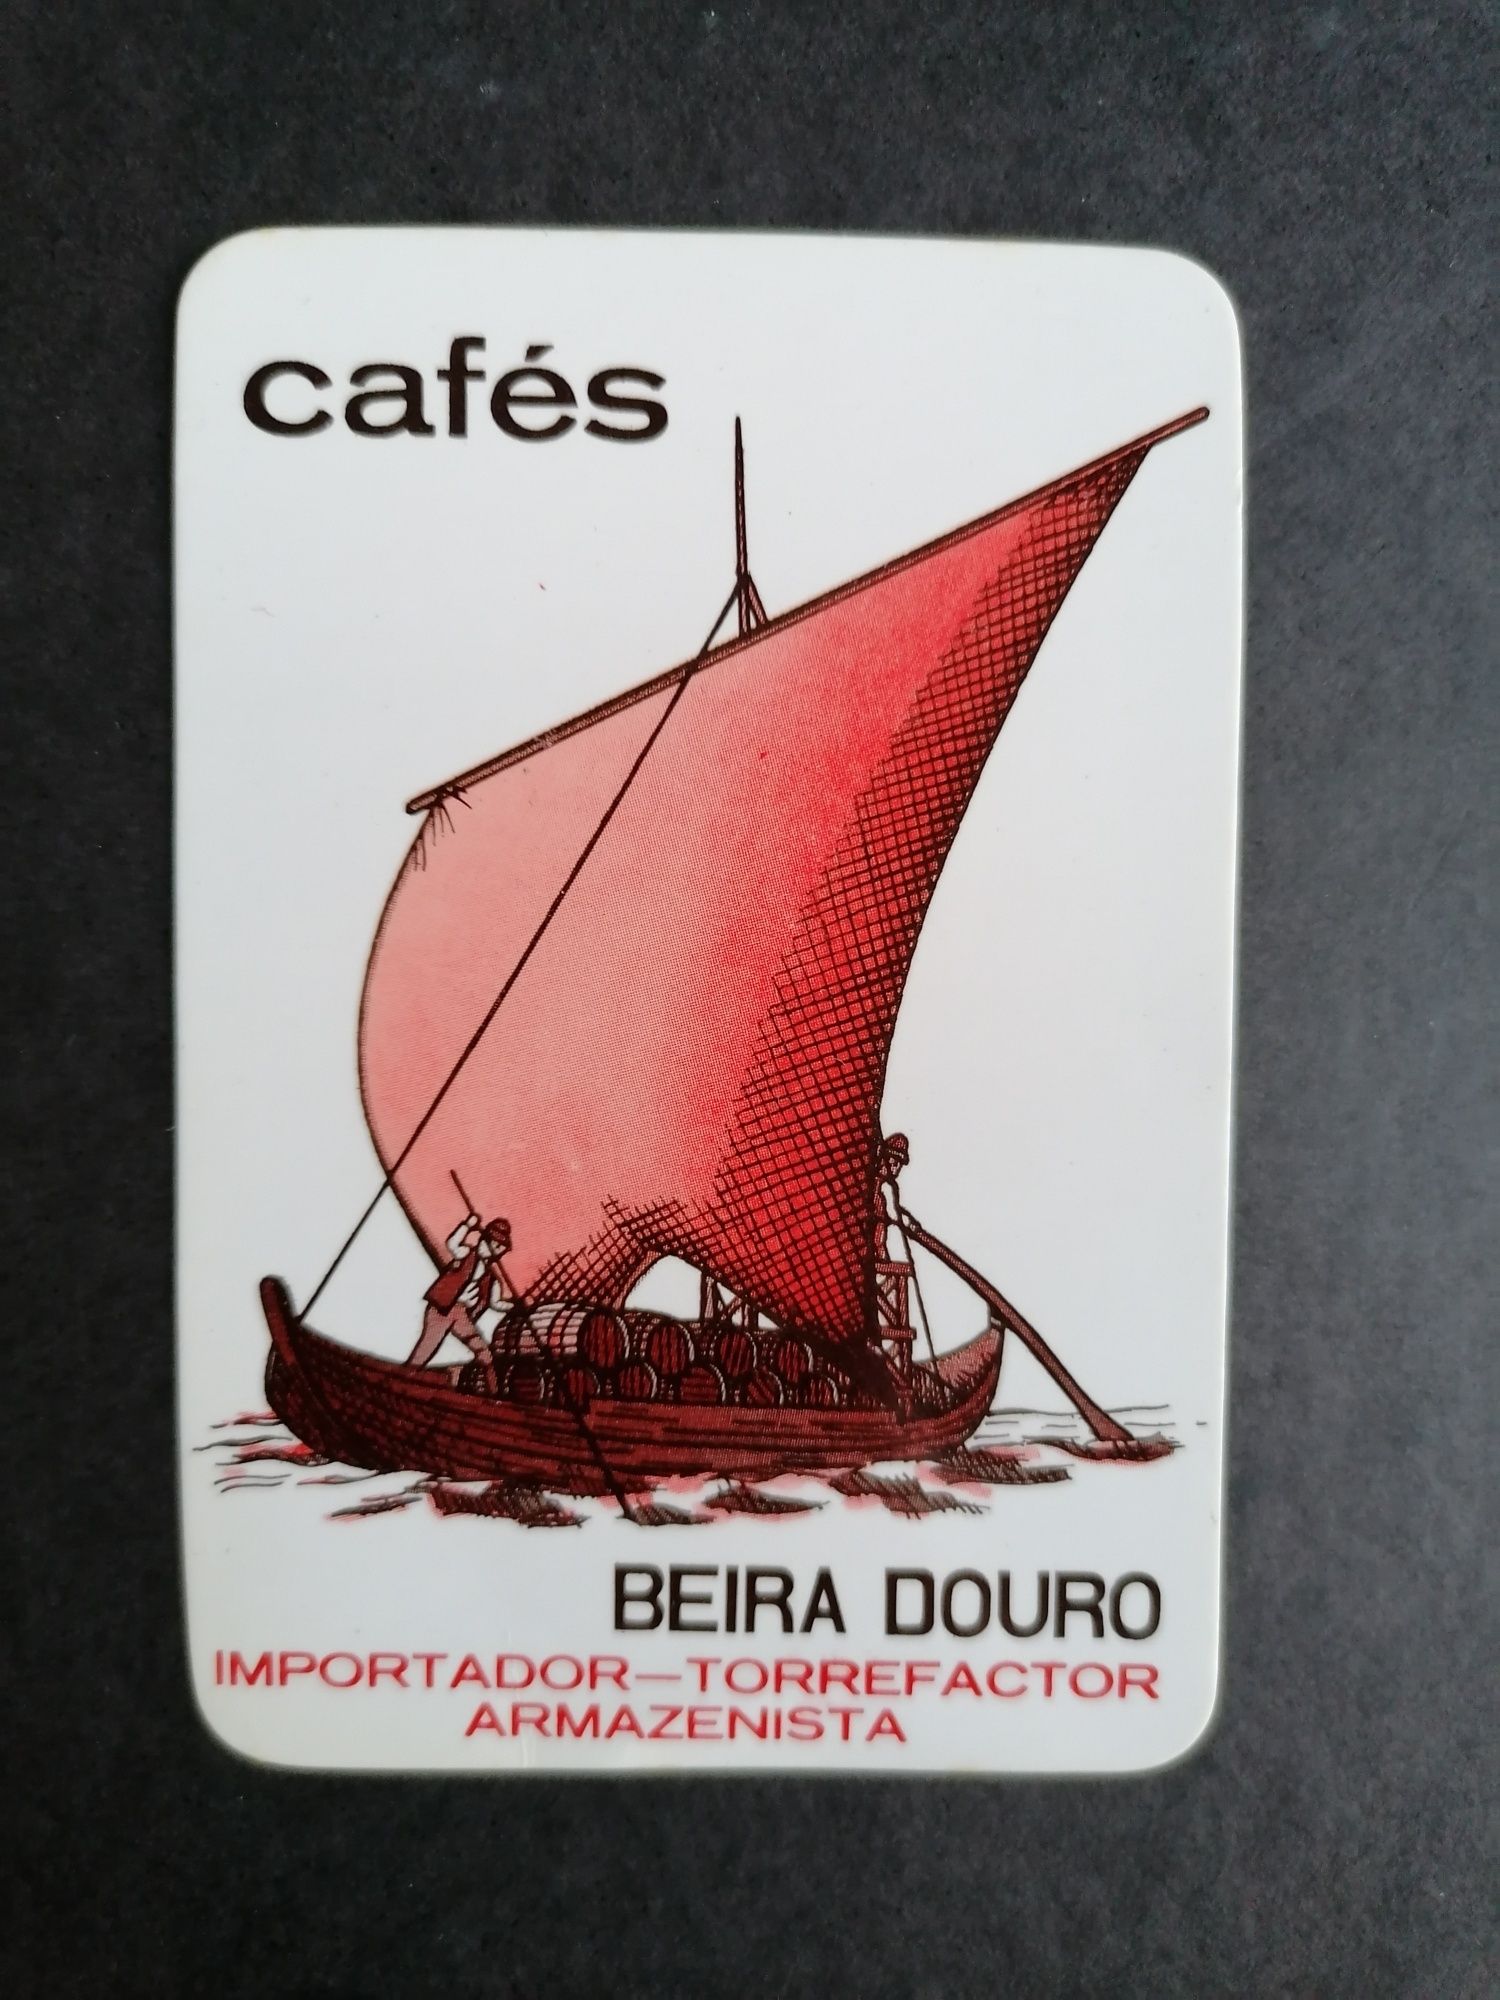 Calendário de 1987 dos Cafés Beira Douro 0, 50.

Envio por ctt para